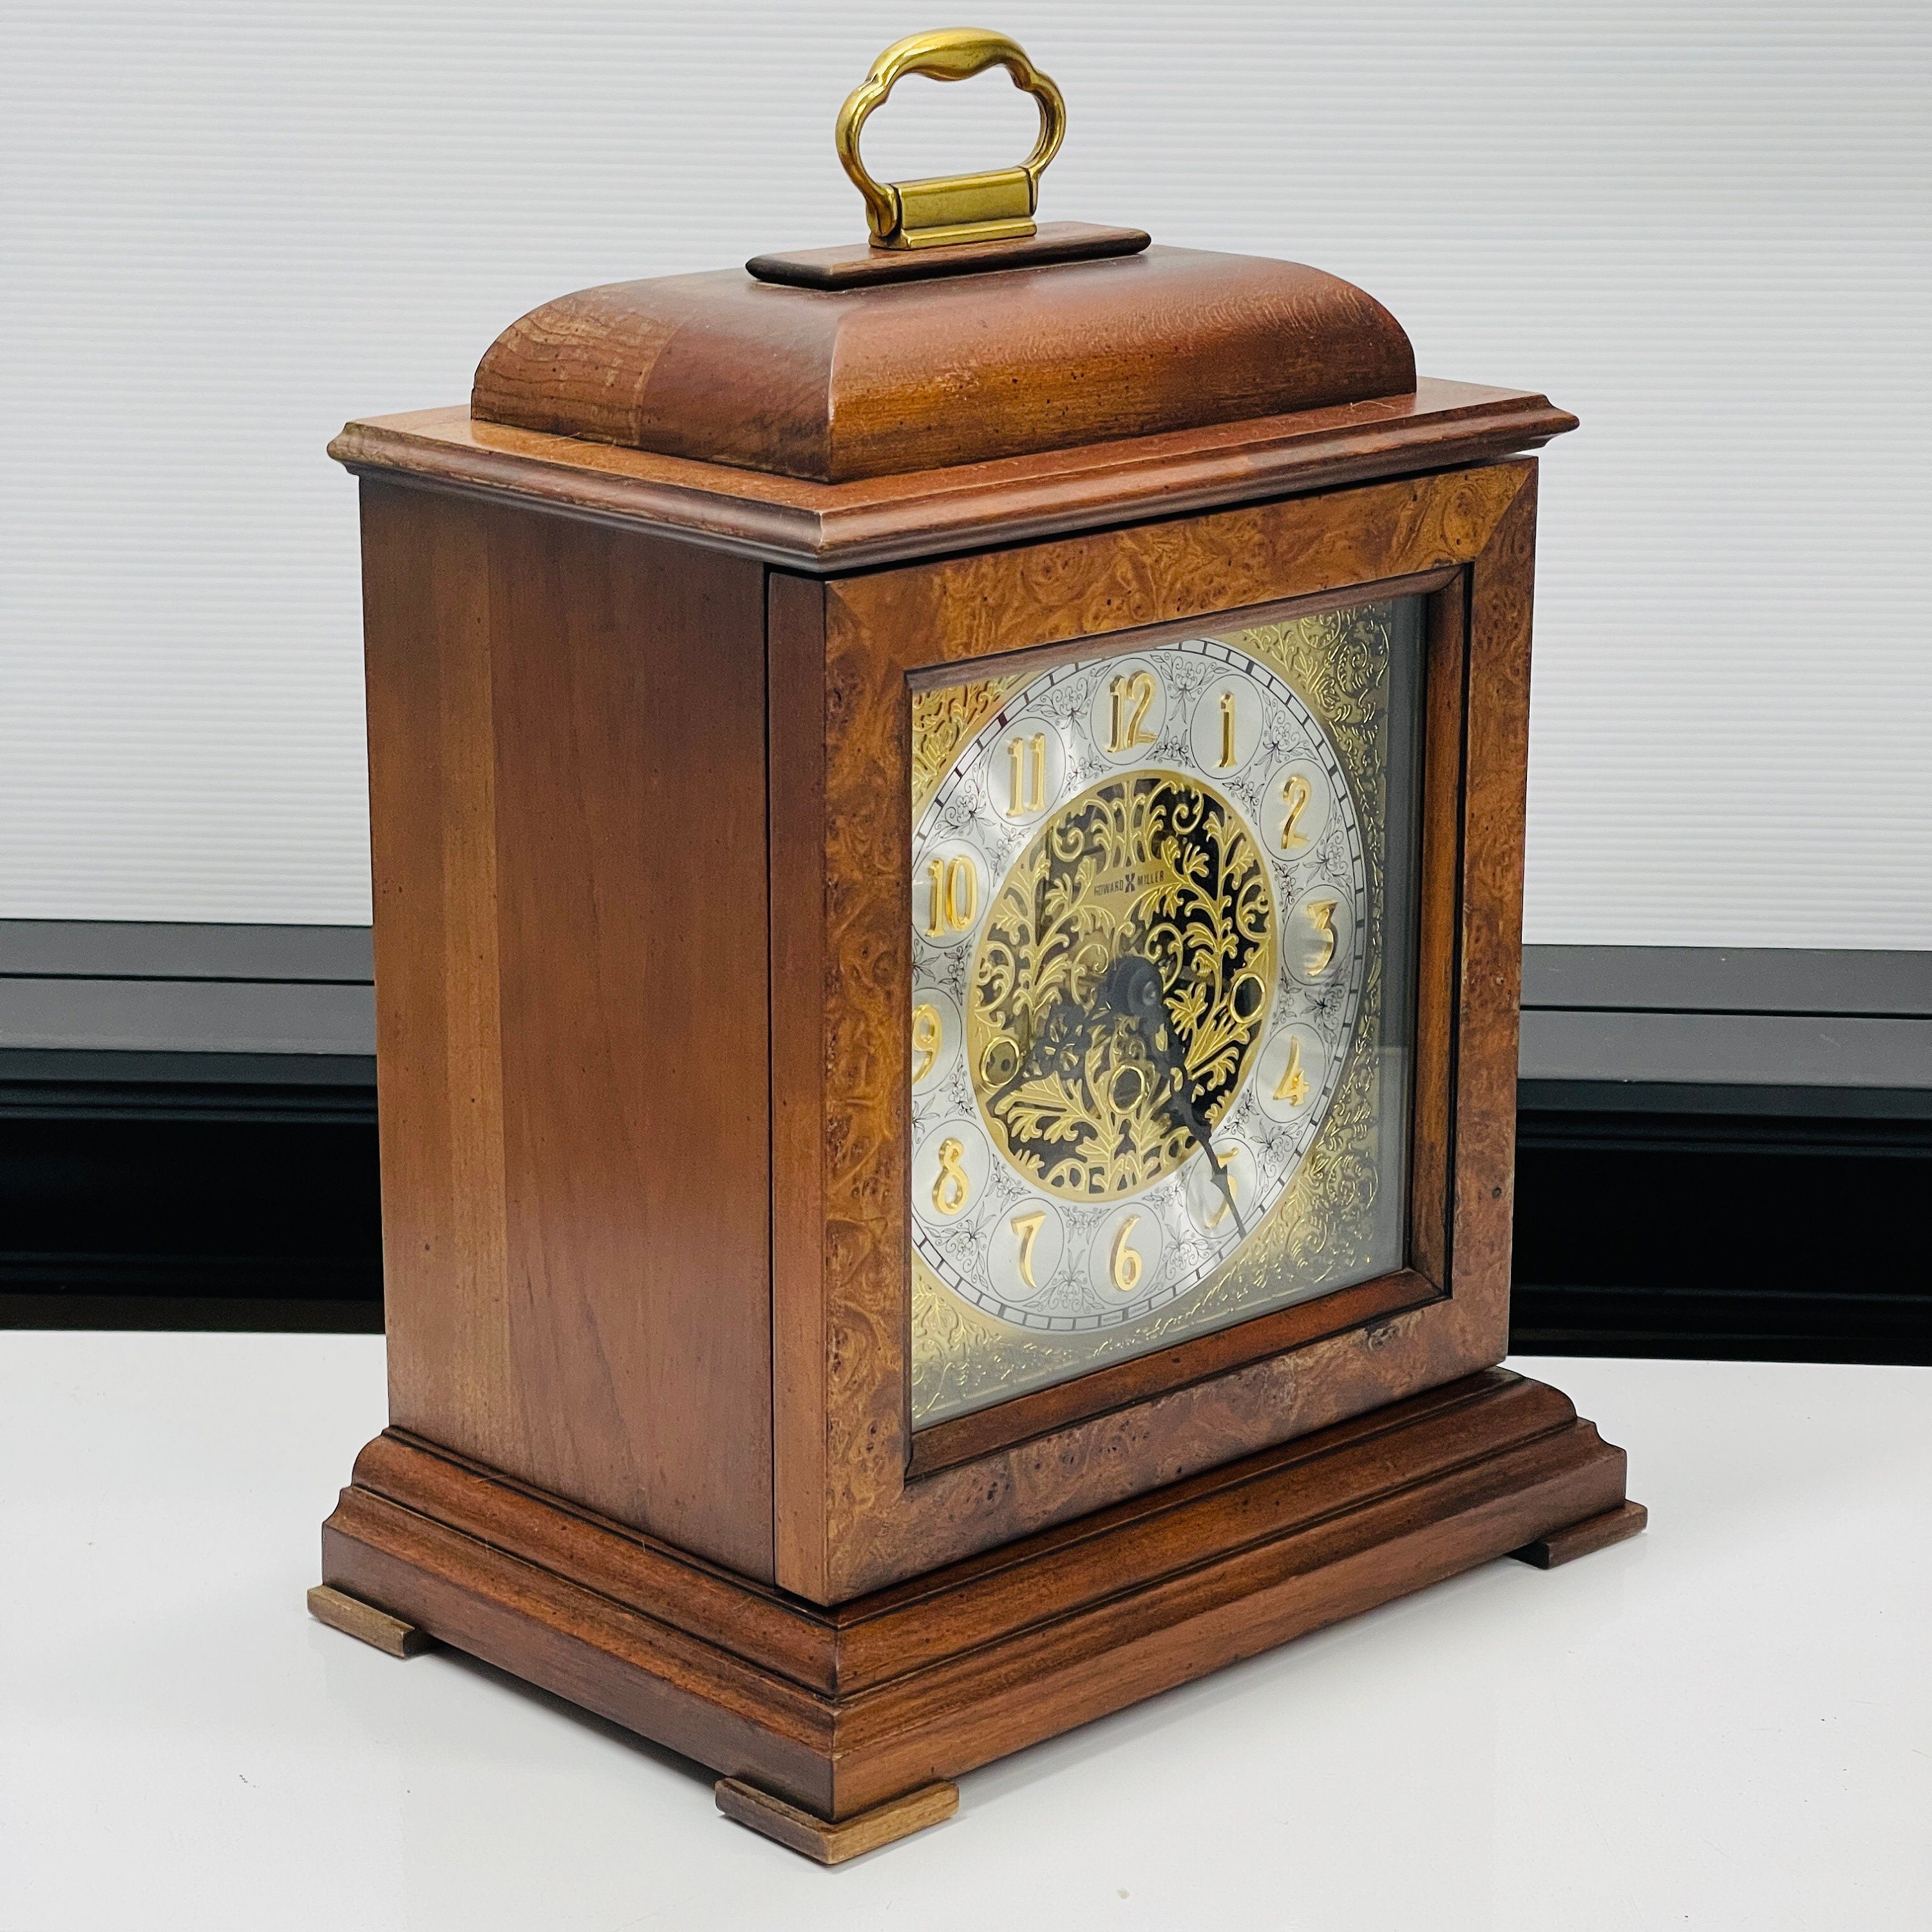 安全 HAPPYセレクトショップHoward Miller Medford Mantel Clock 612-481 Windsor Cherry  Finish, Classic English Bracket, Brass-Finish Handle, Quartz Dual-Chime  Movement